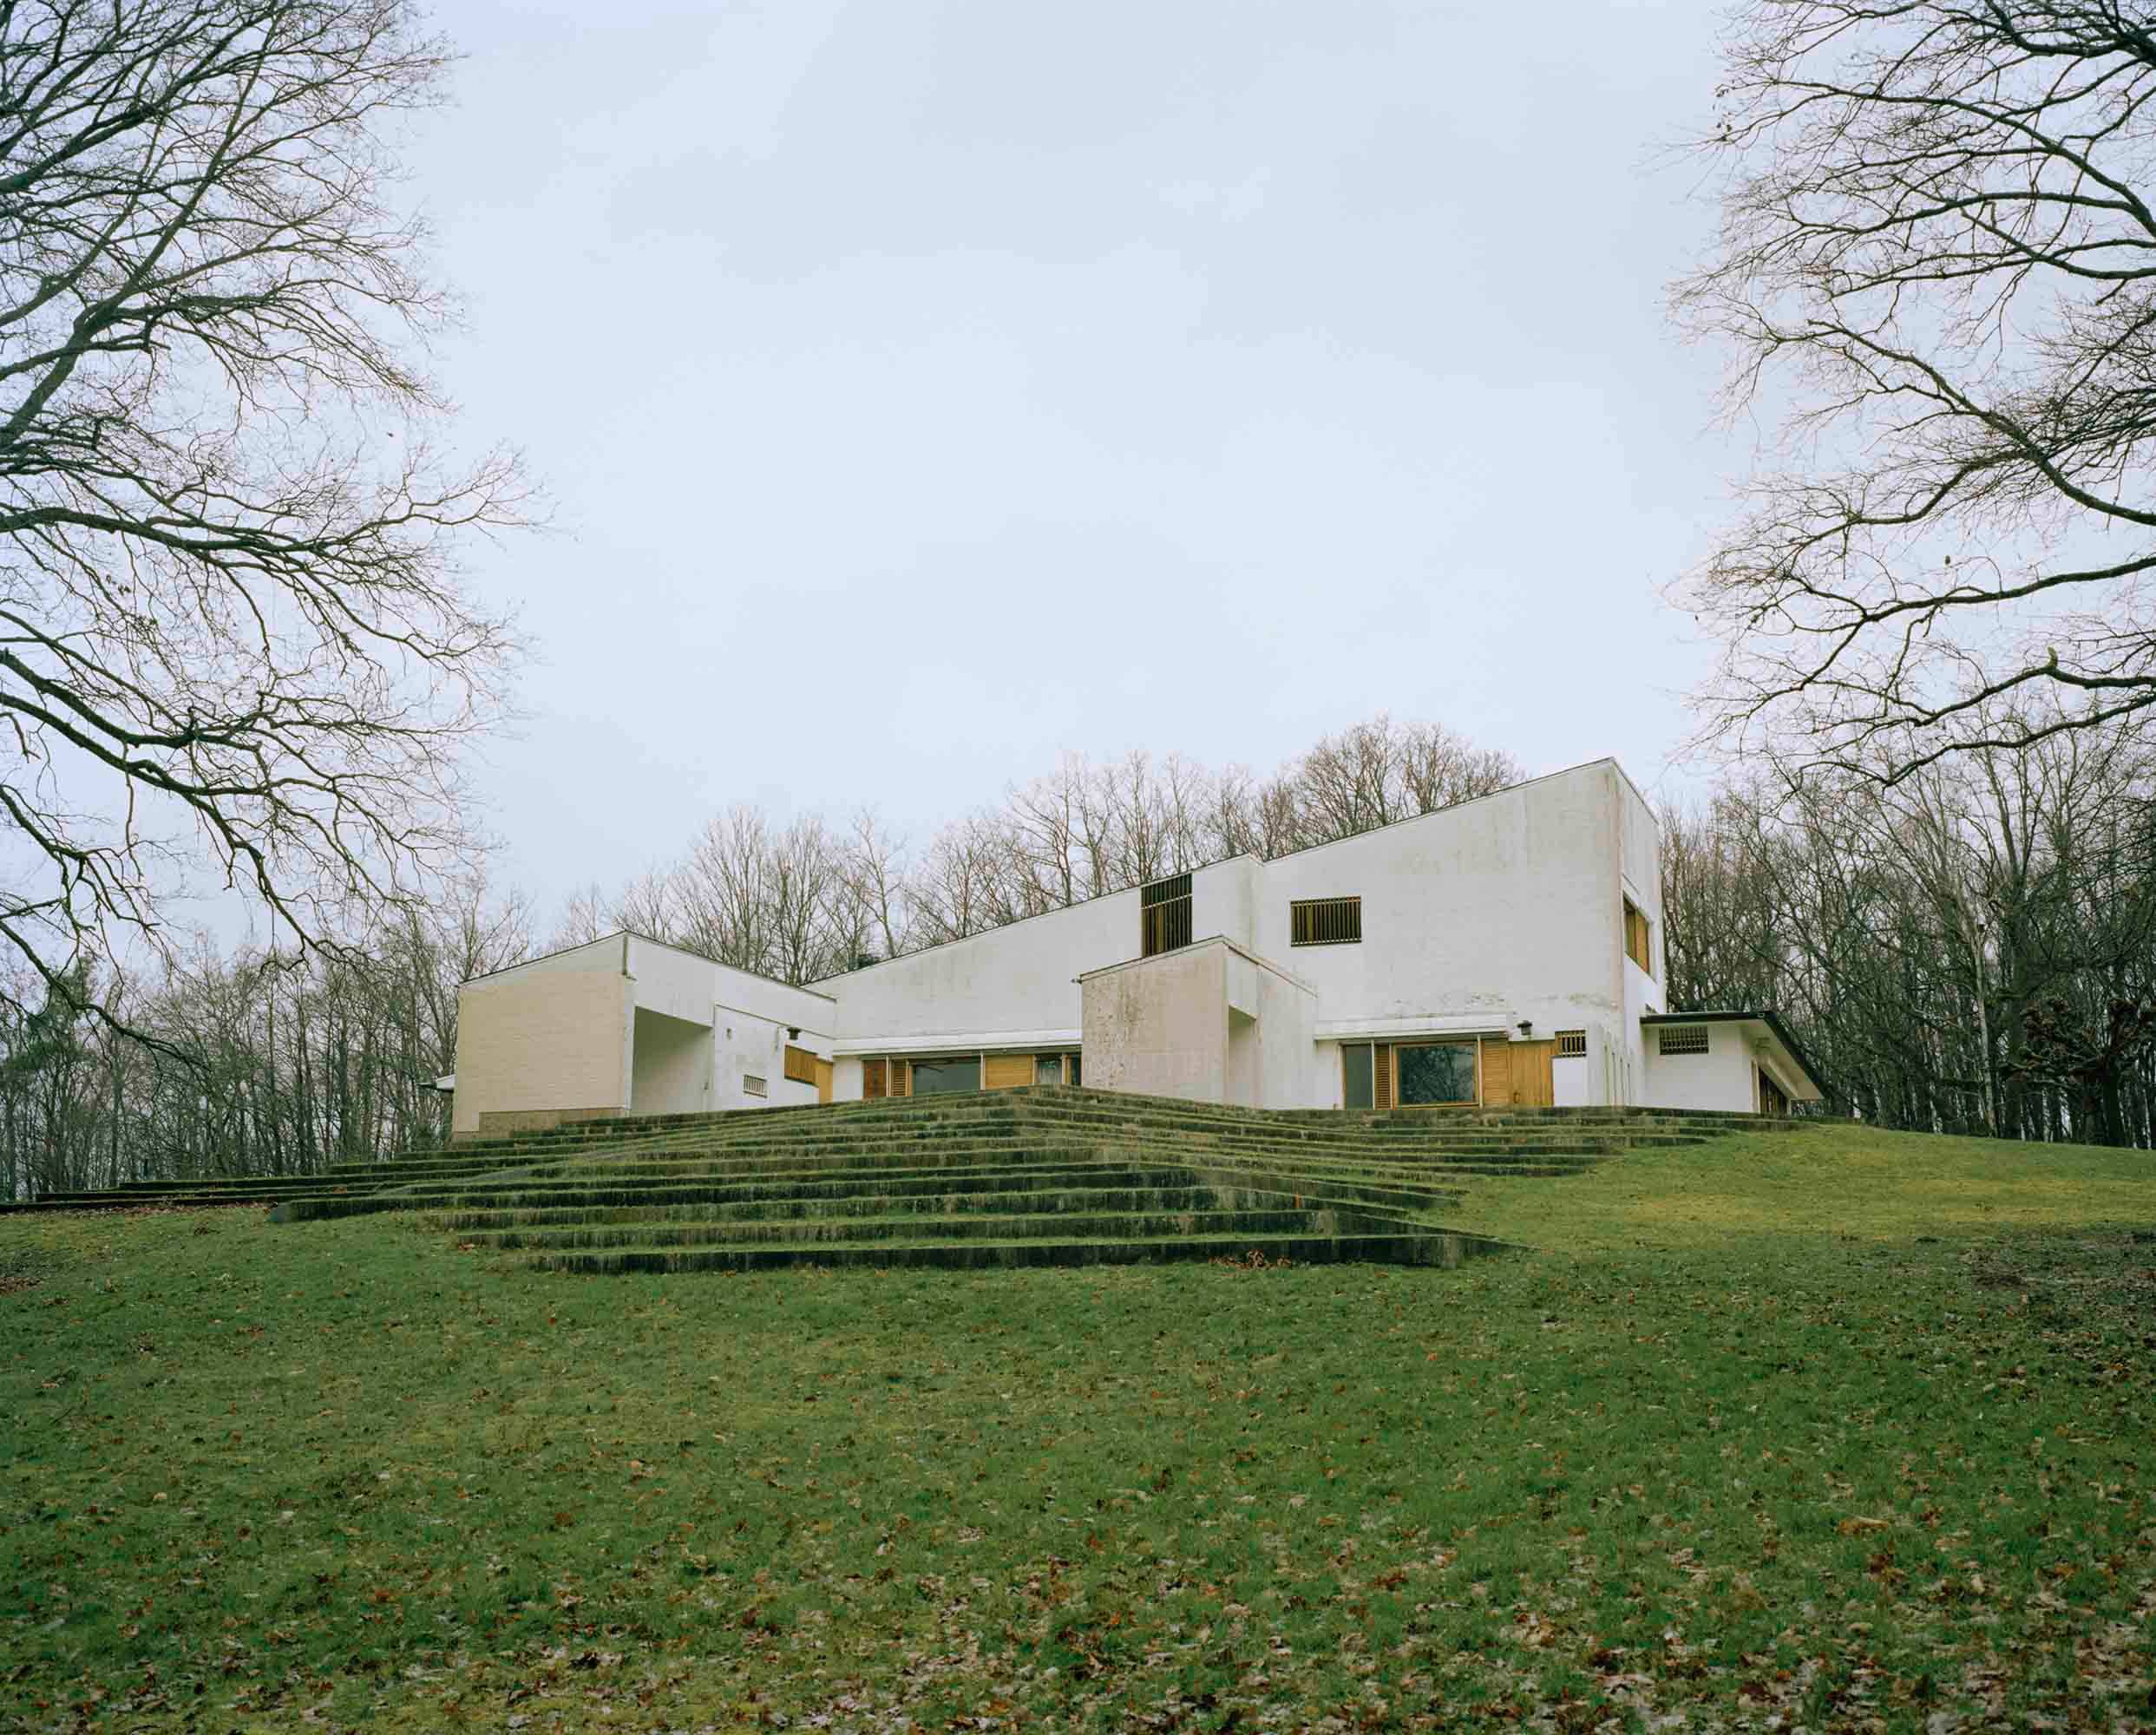 Les secrets d’Alvar Aalto, pionnier de l’architecture nordique